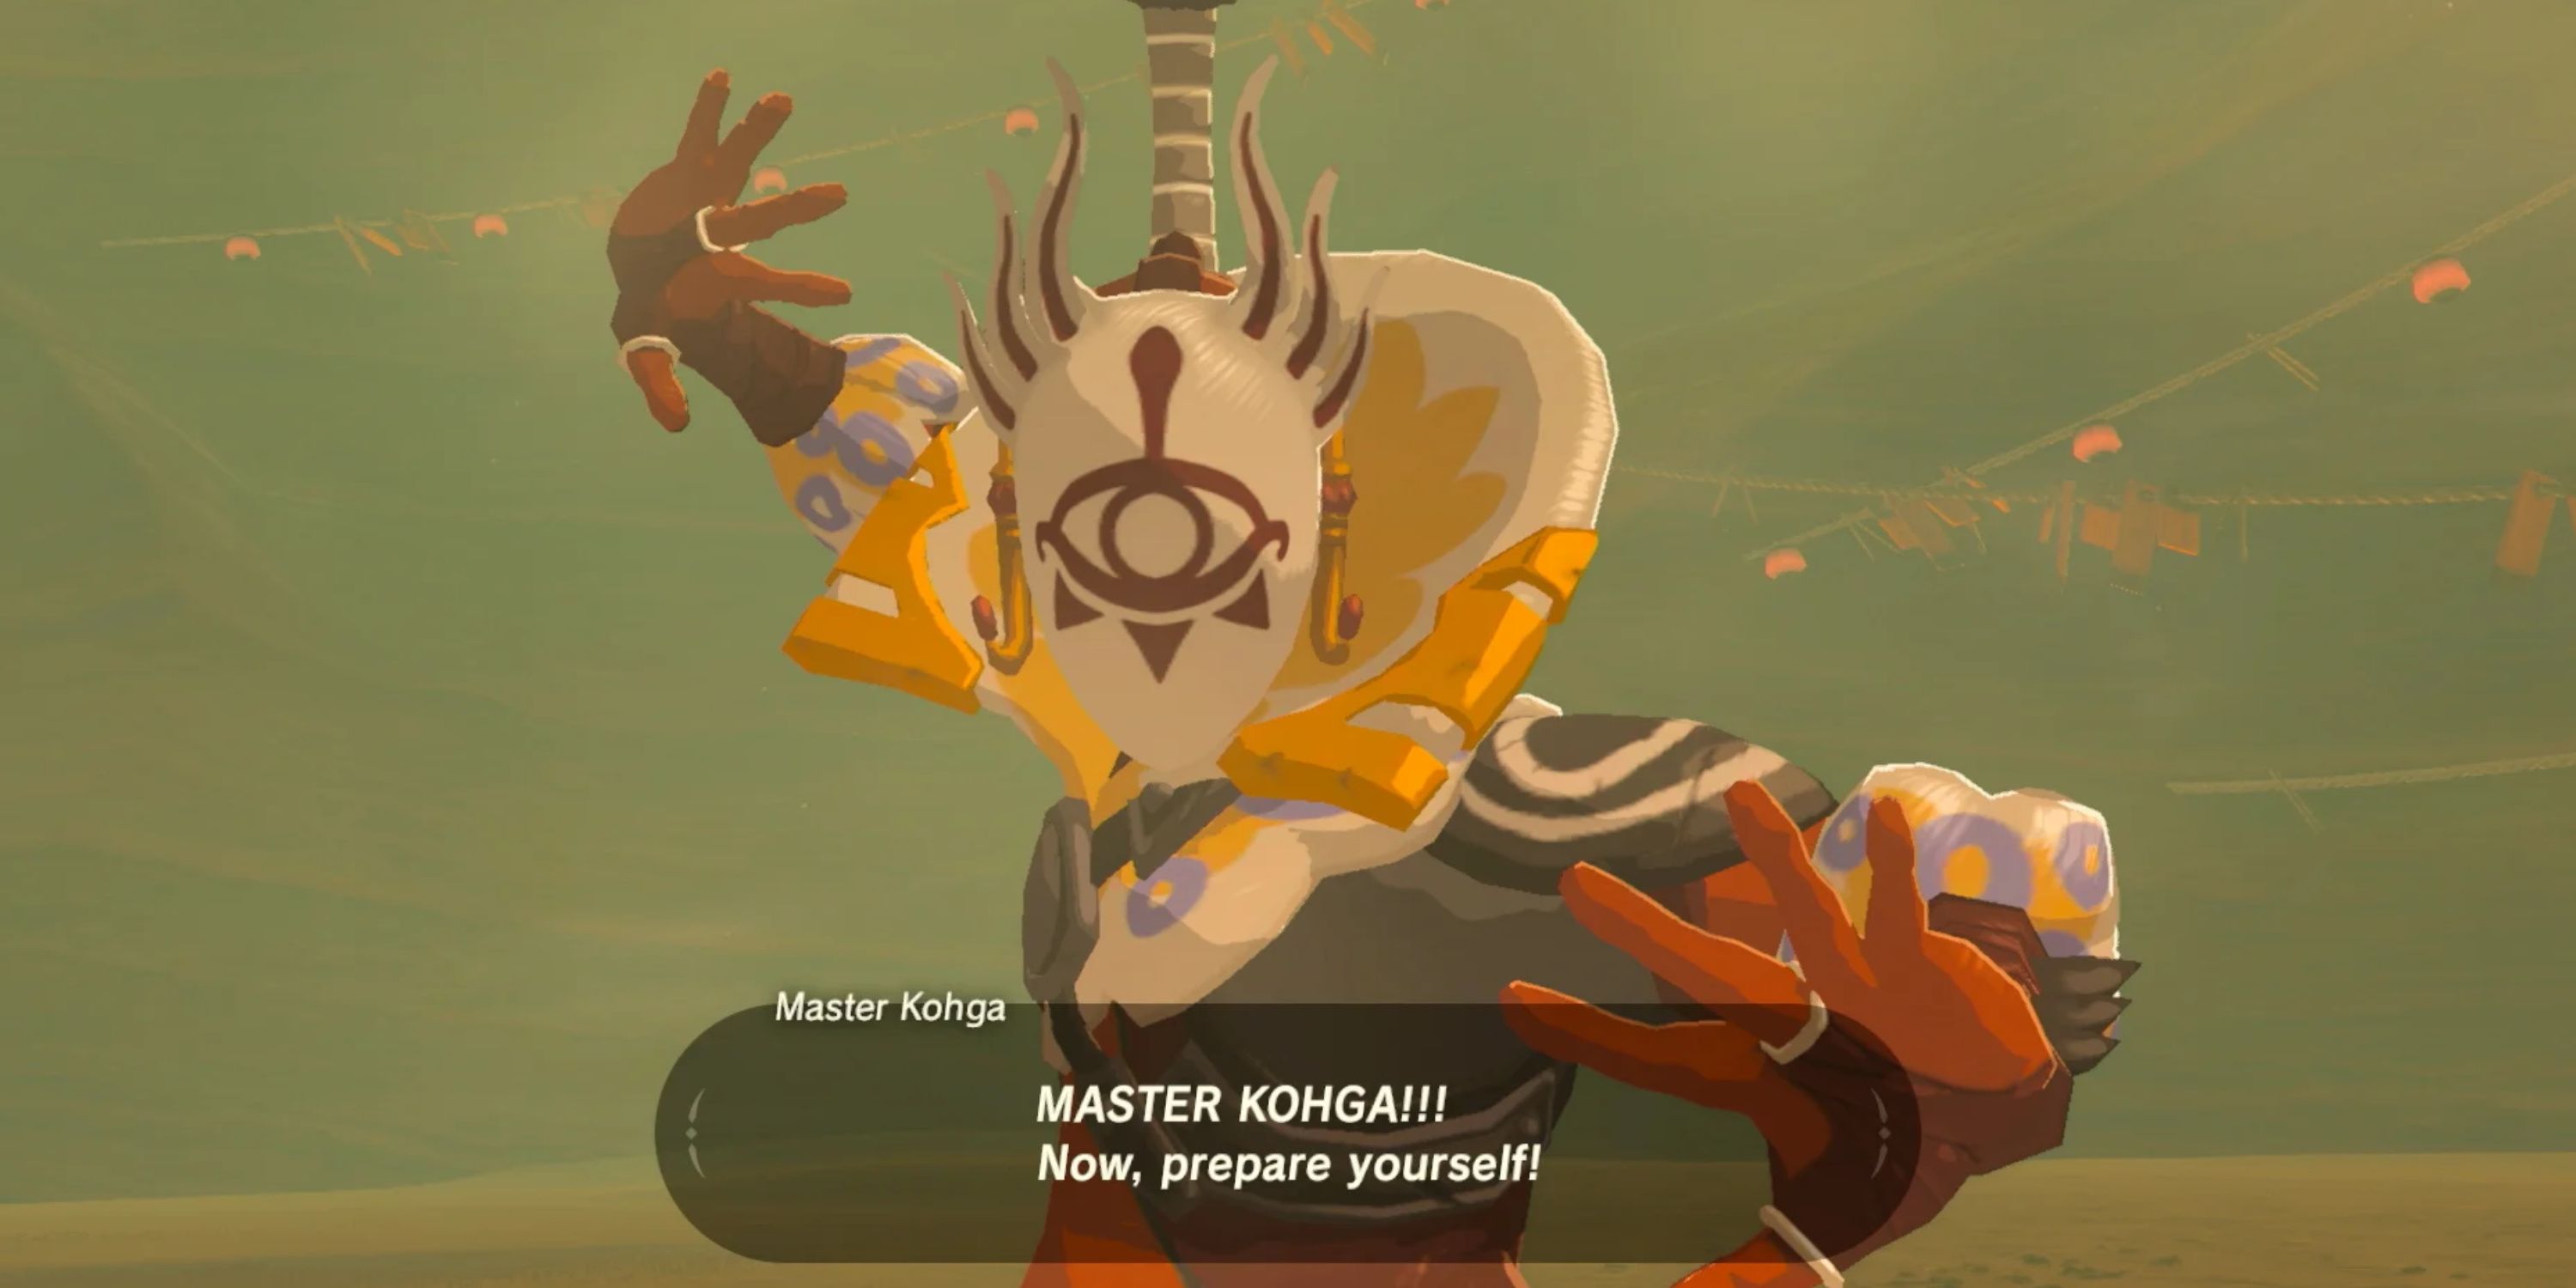 Link luchará contra el maestro Kohga en Breath of the Wild